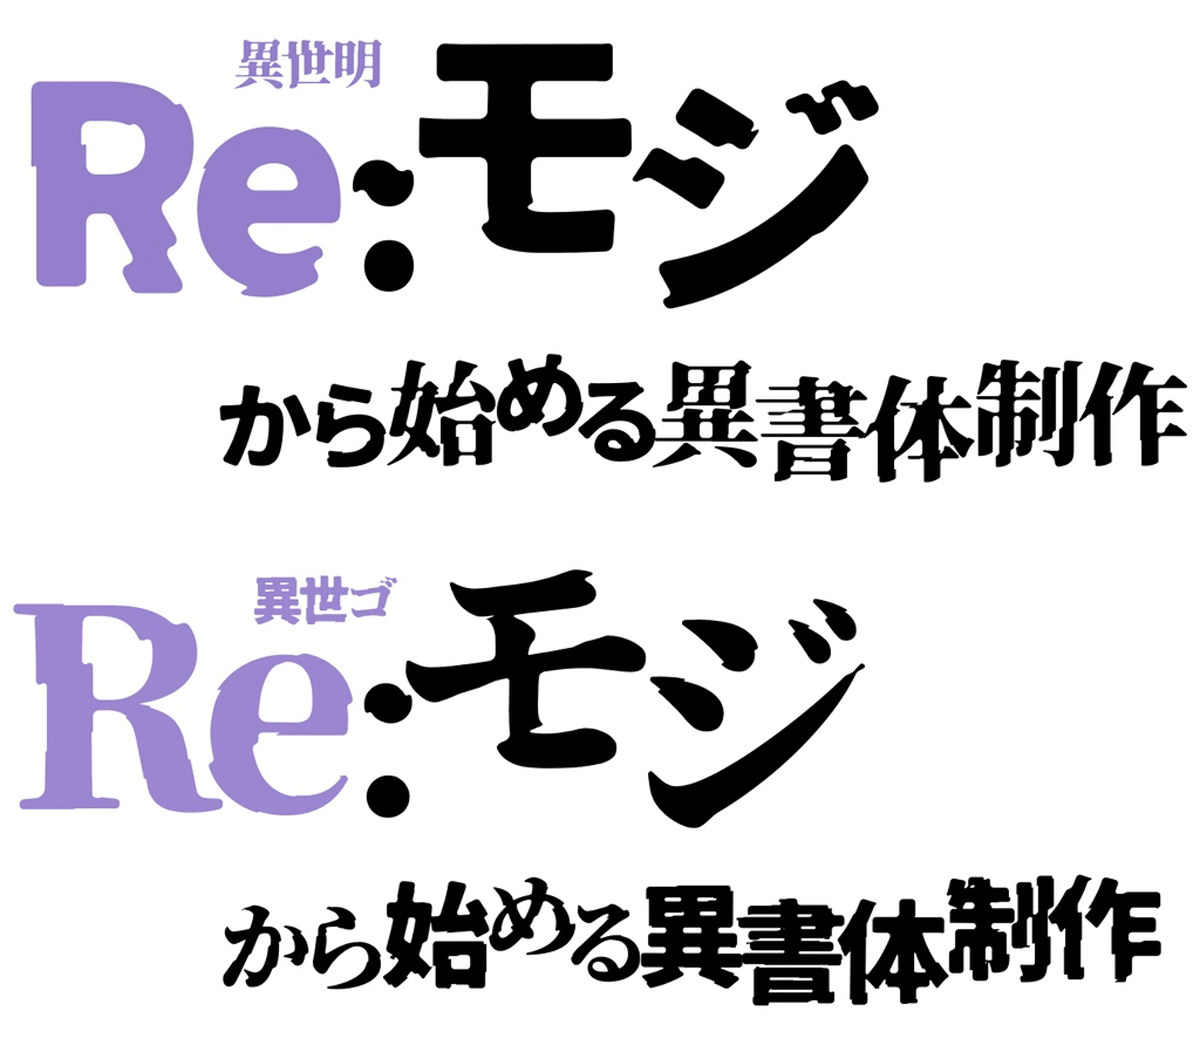 アニメ「Re:ゼロから始める異世界生活」のタイトルロゴ風